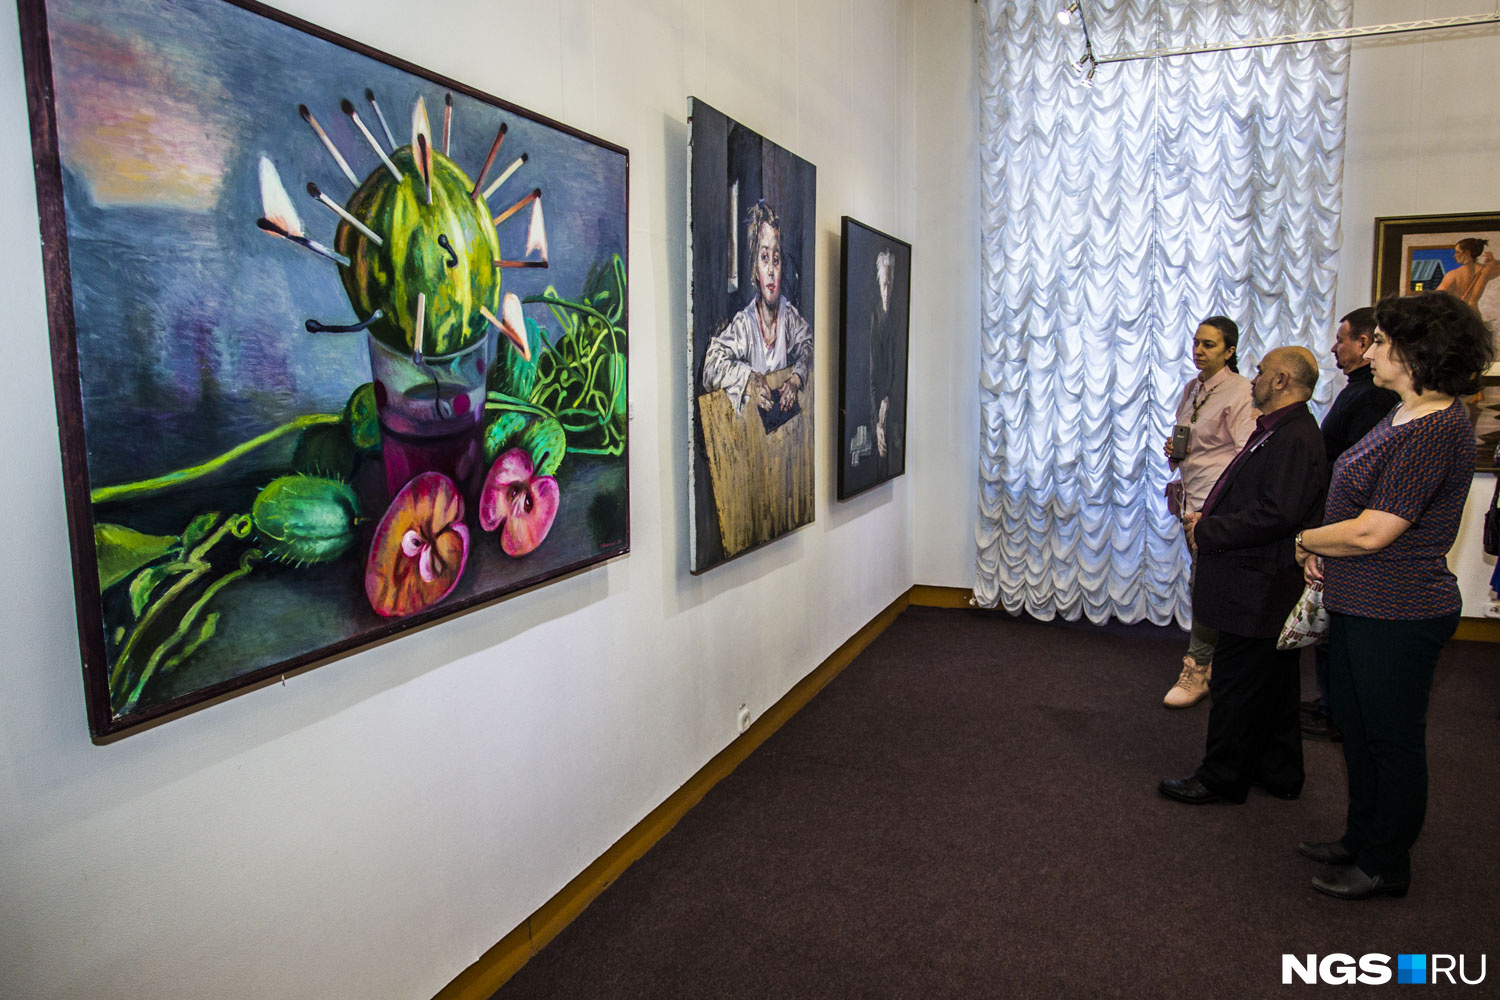 Посмотреть картины мастеров из разных городов Сибири, Урала и Дальнего Востока можно в залах художественного музея